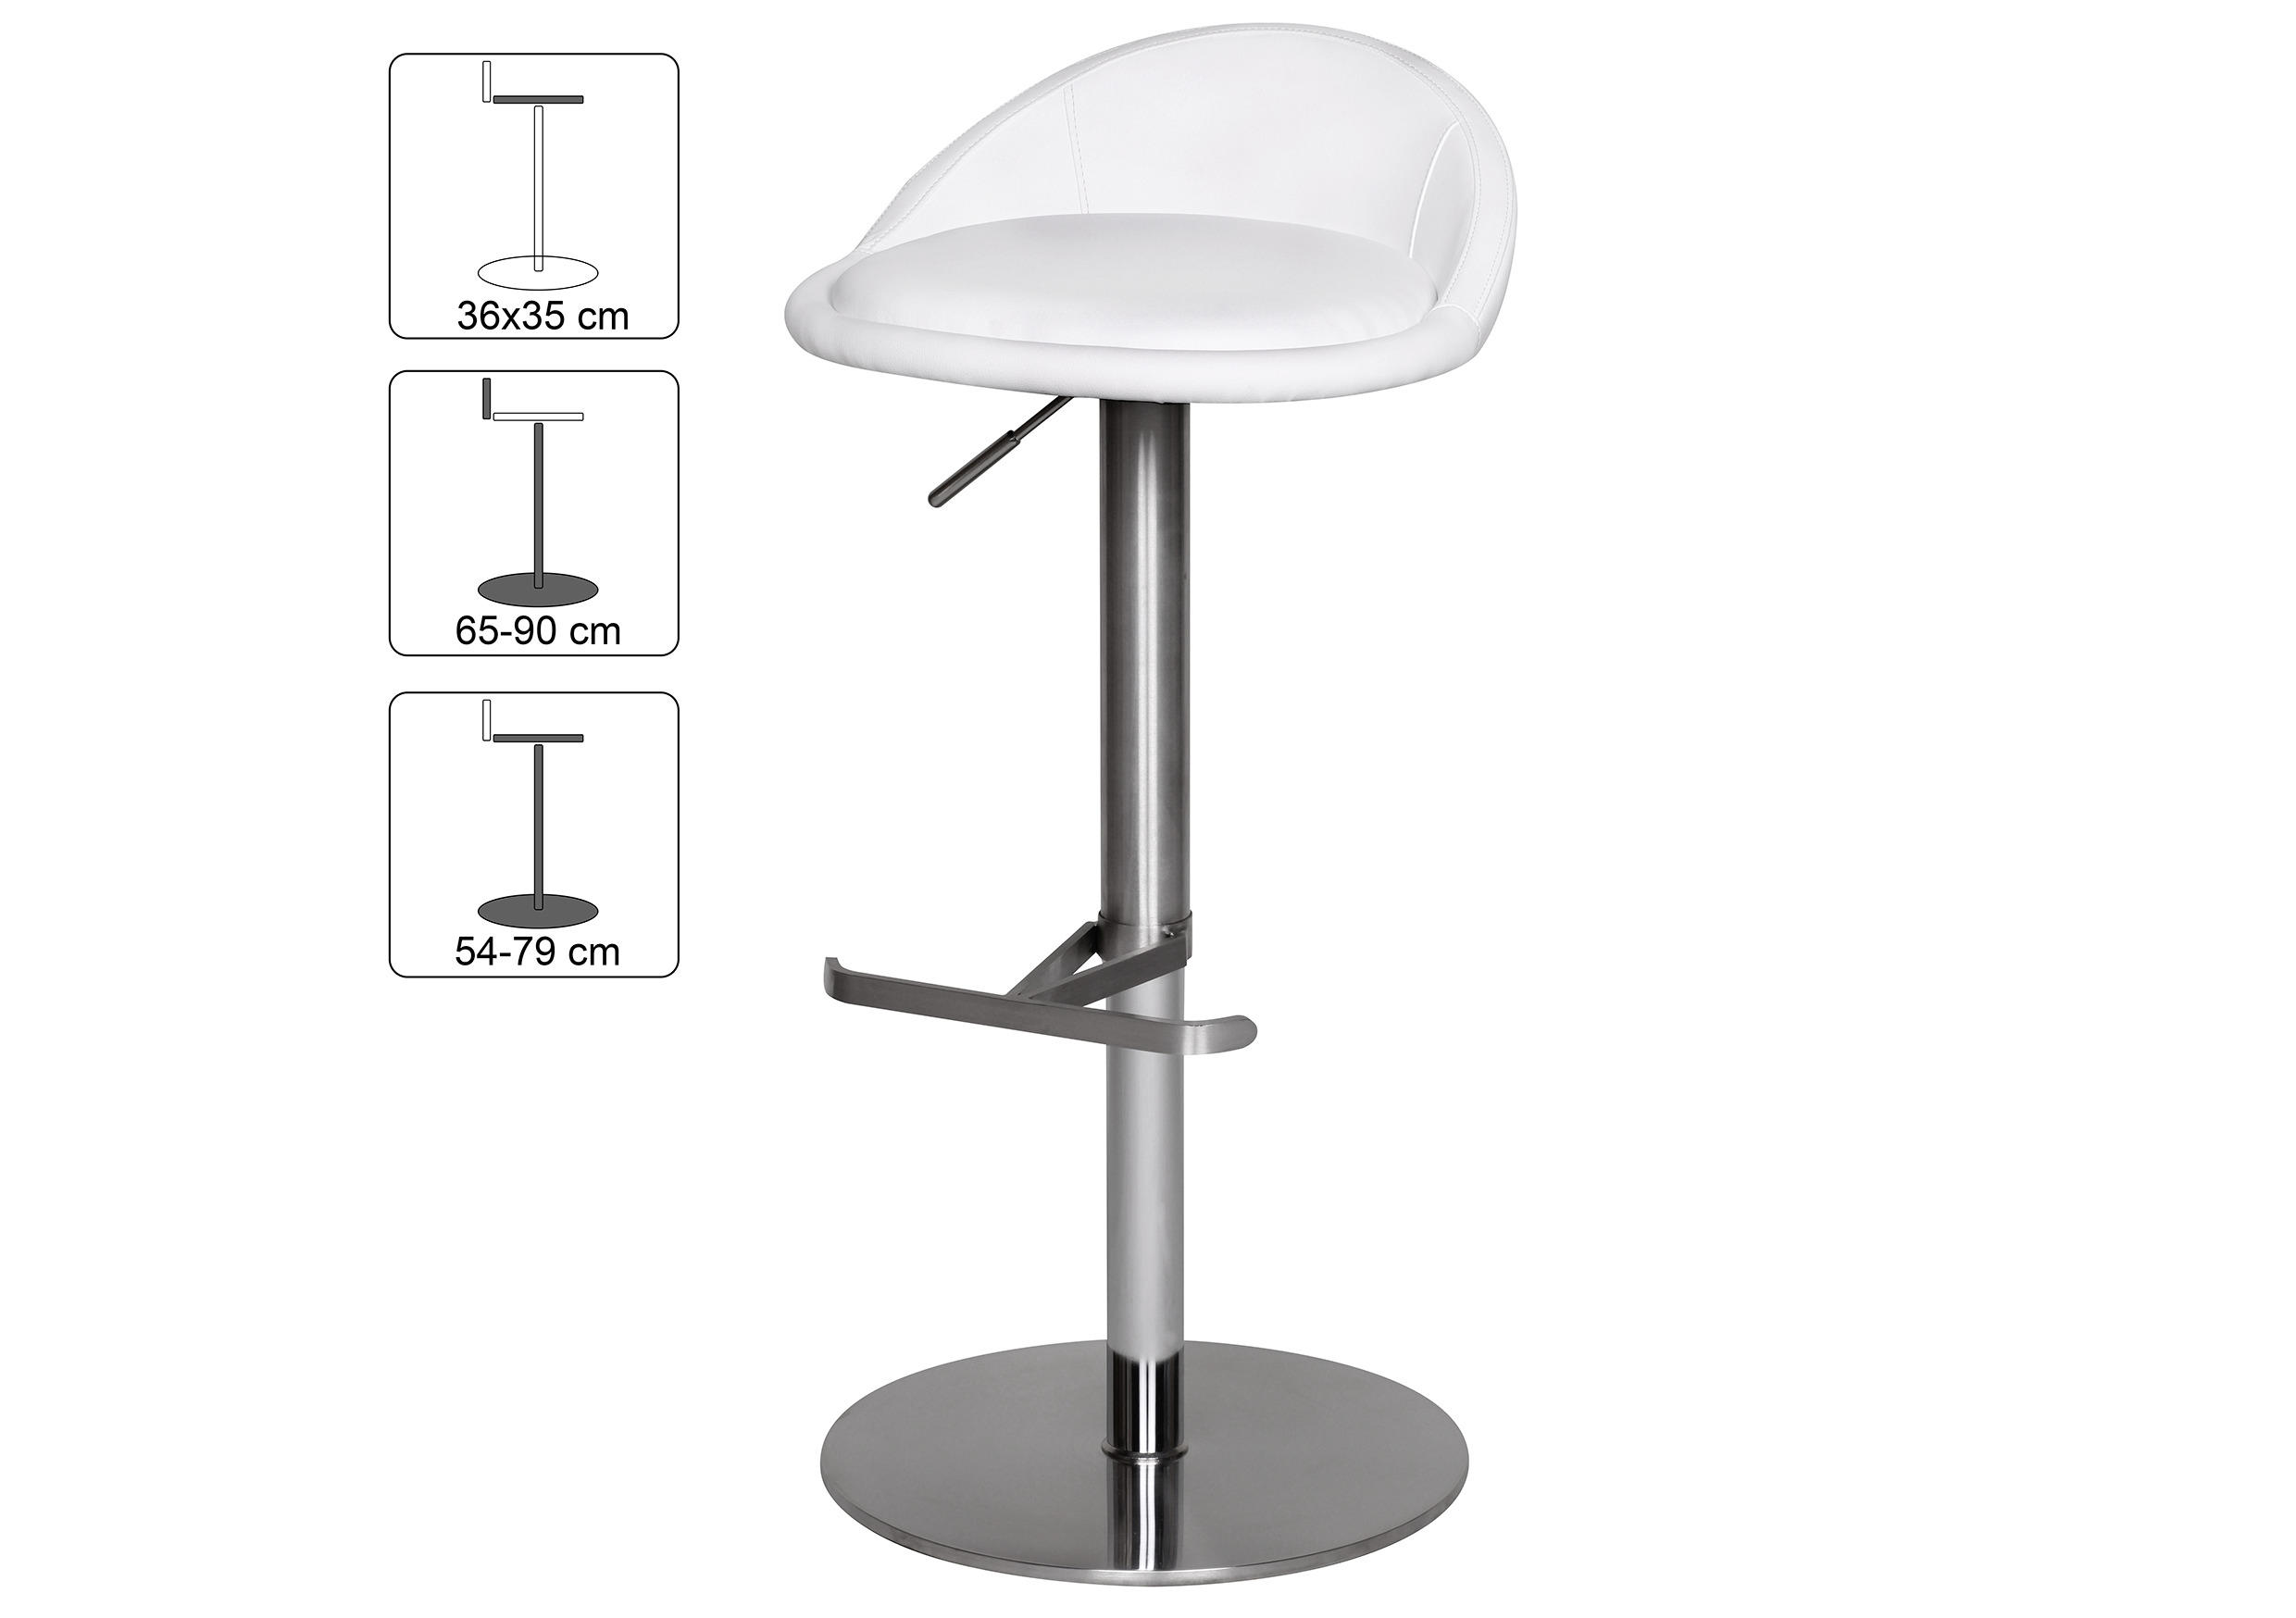 BARHOCKER Weiß Sitzfläche 360° drehbar  - Silberfarben/Weiß, MODERN, Textil/Metall (43/65/43cm) - MID.YOU